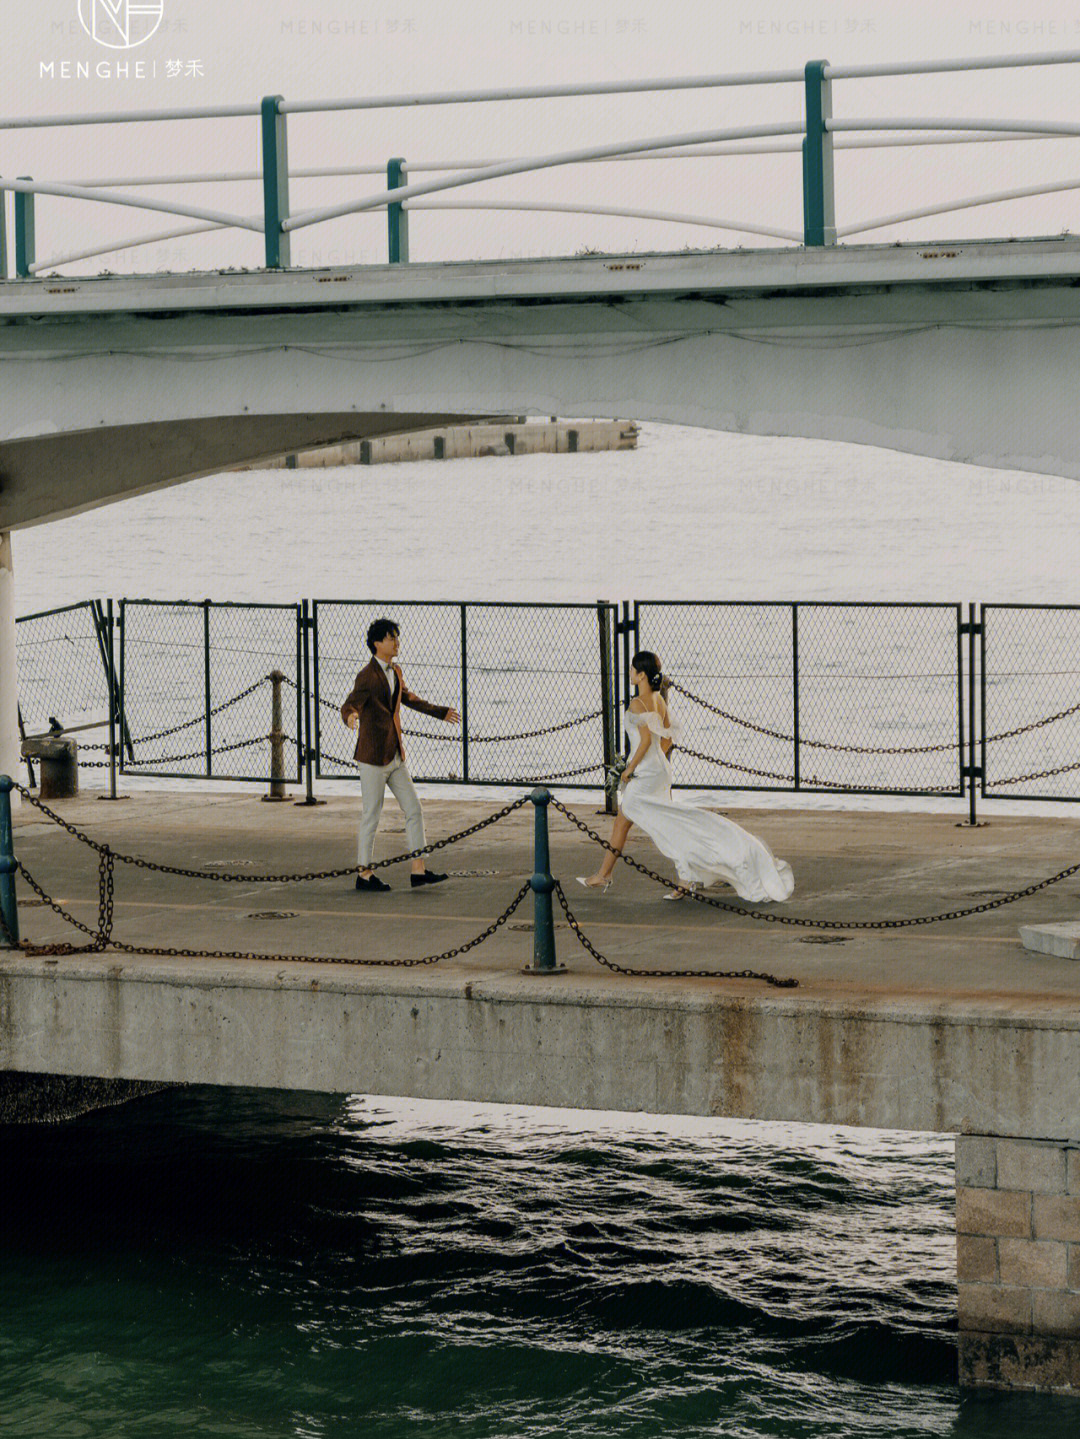 苏州婚纱照 码头图片